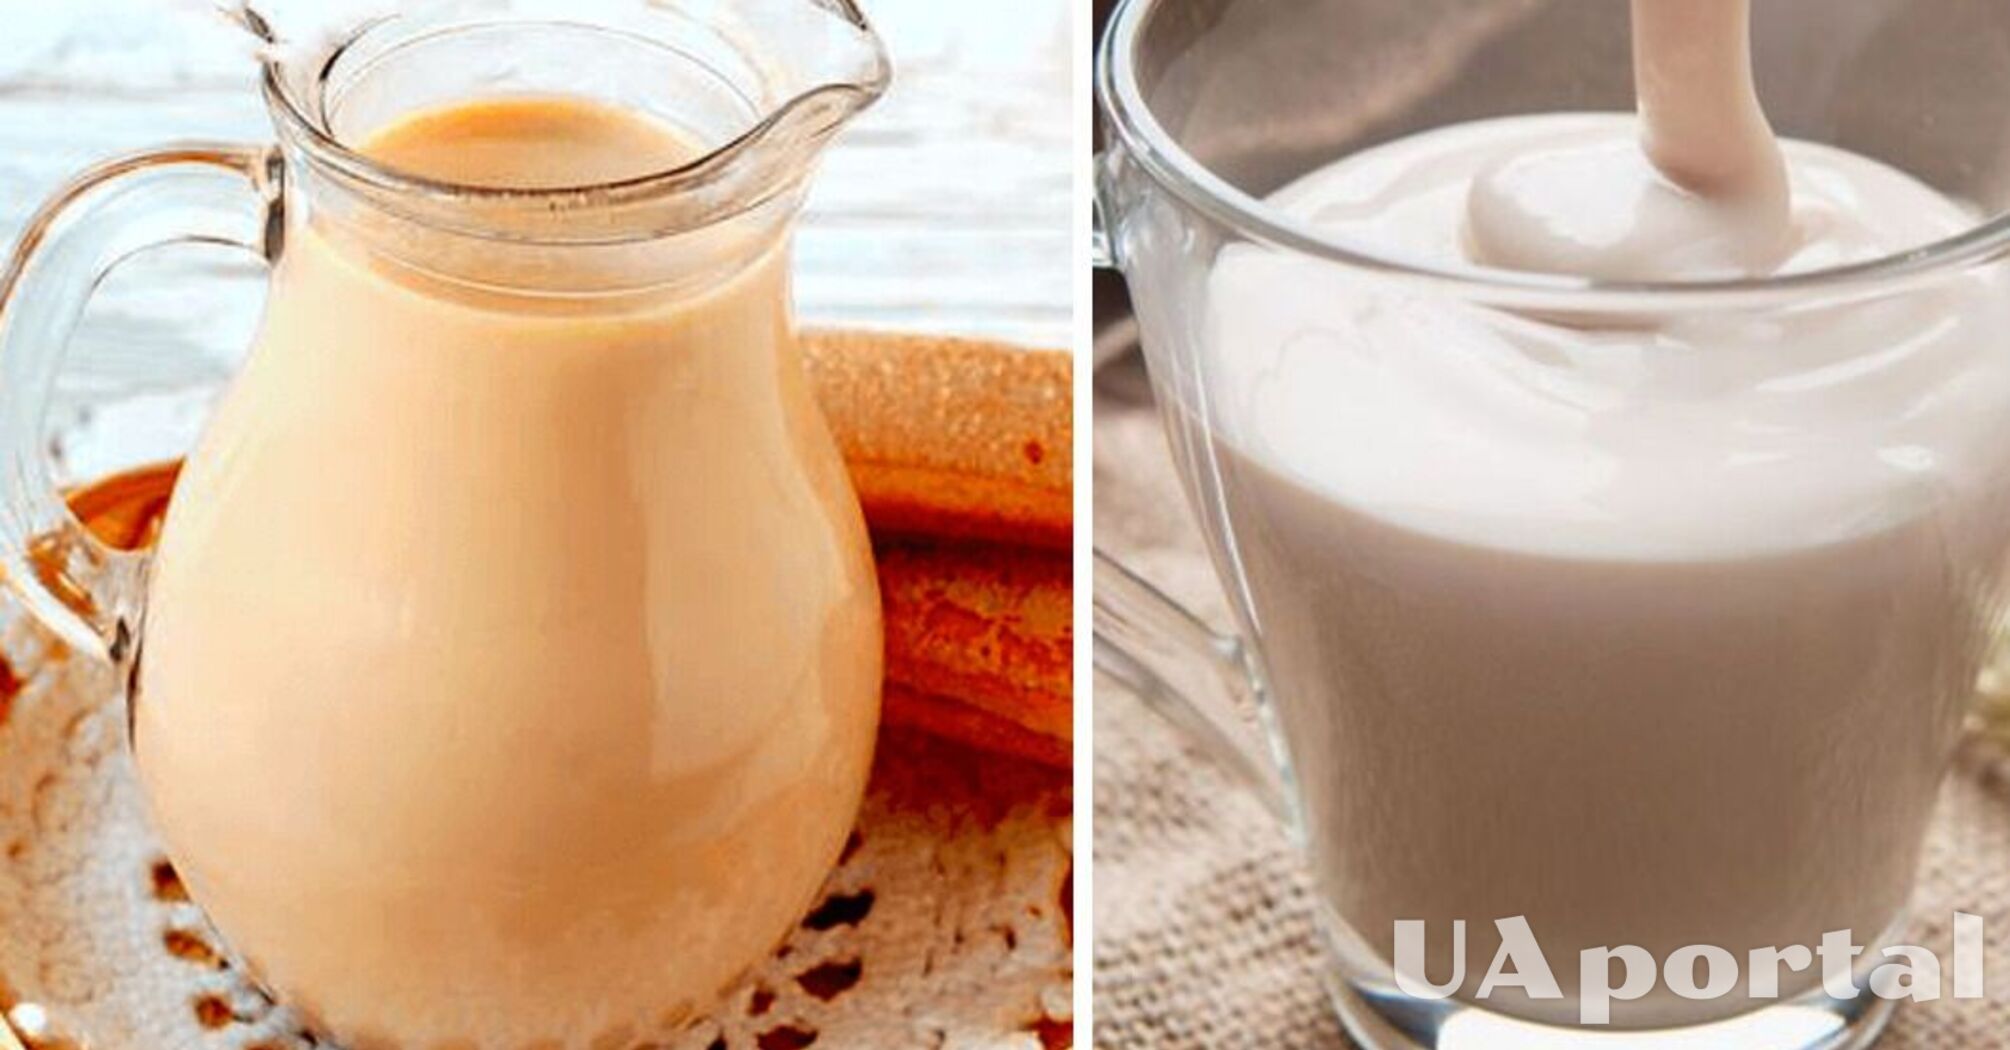 How to make clarified milk and ryazhenka at home